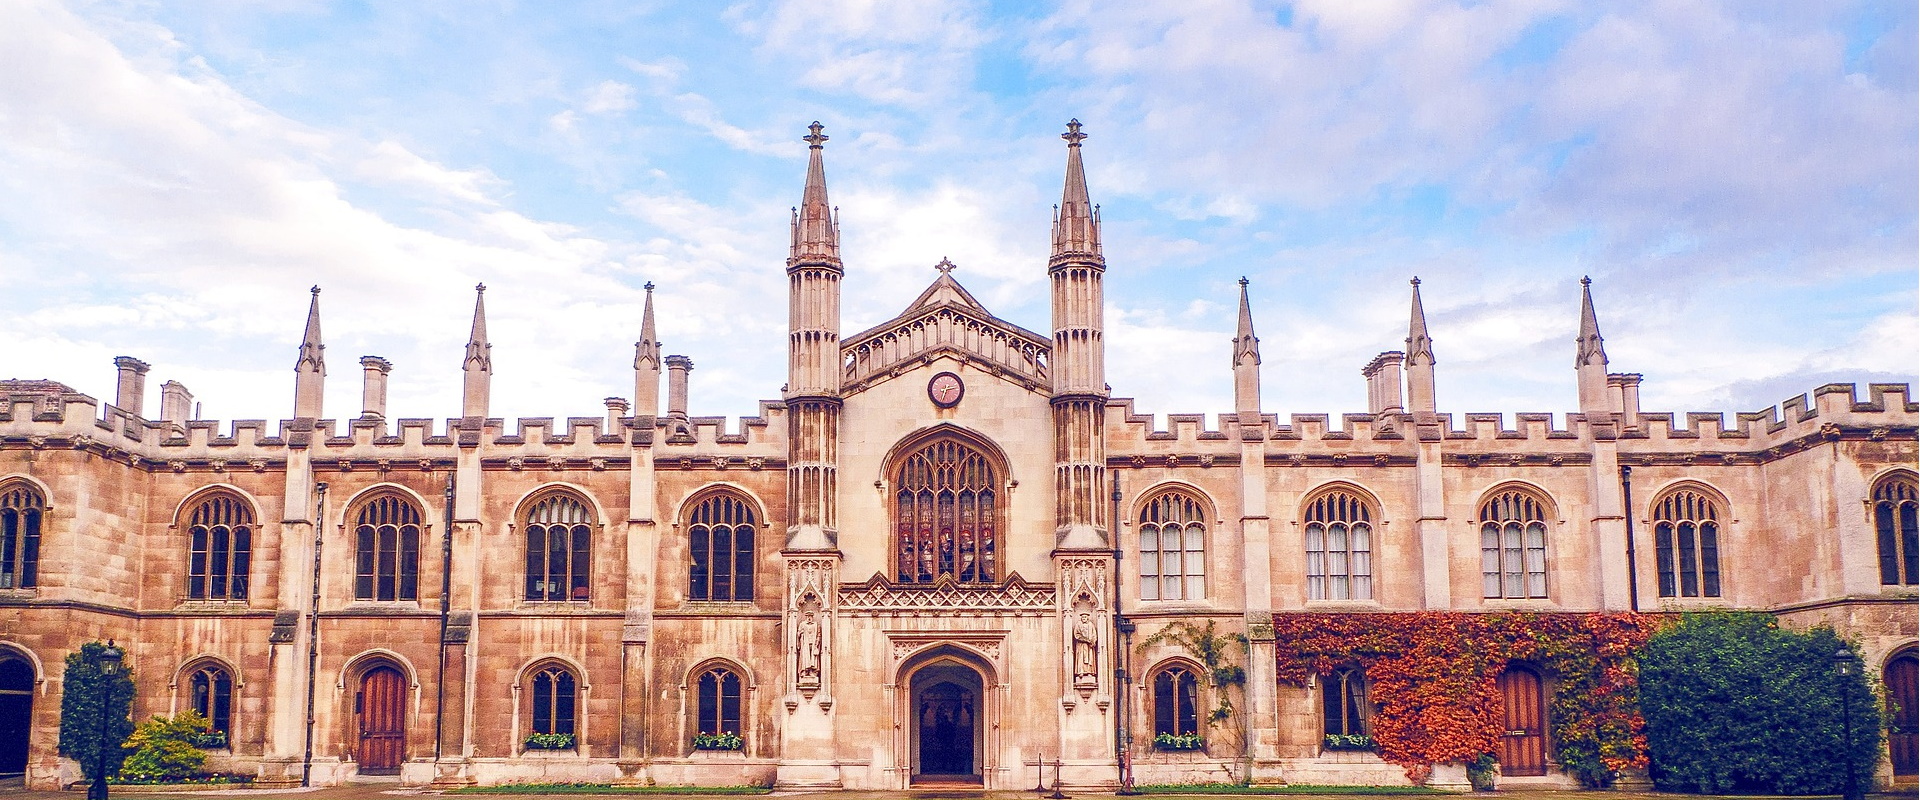 Die Cambridge Universität im Osten von England